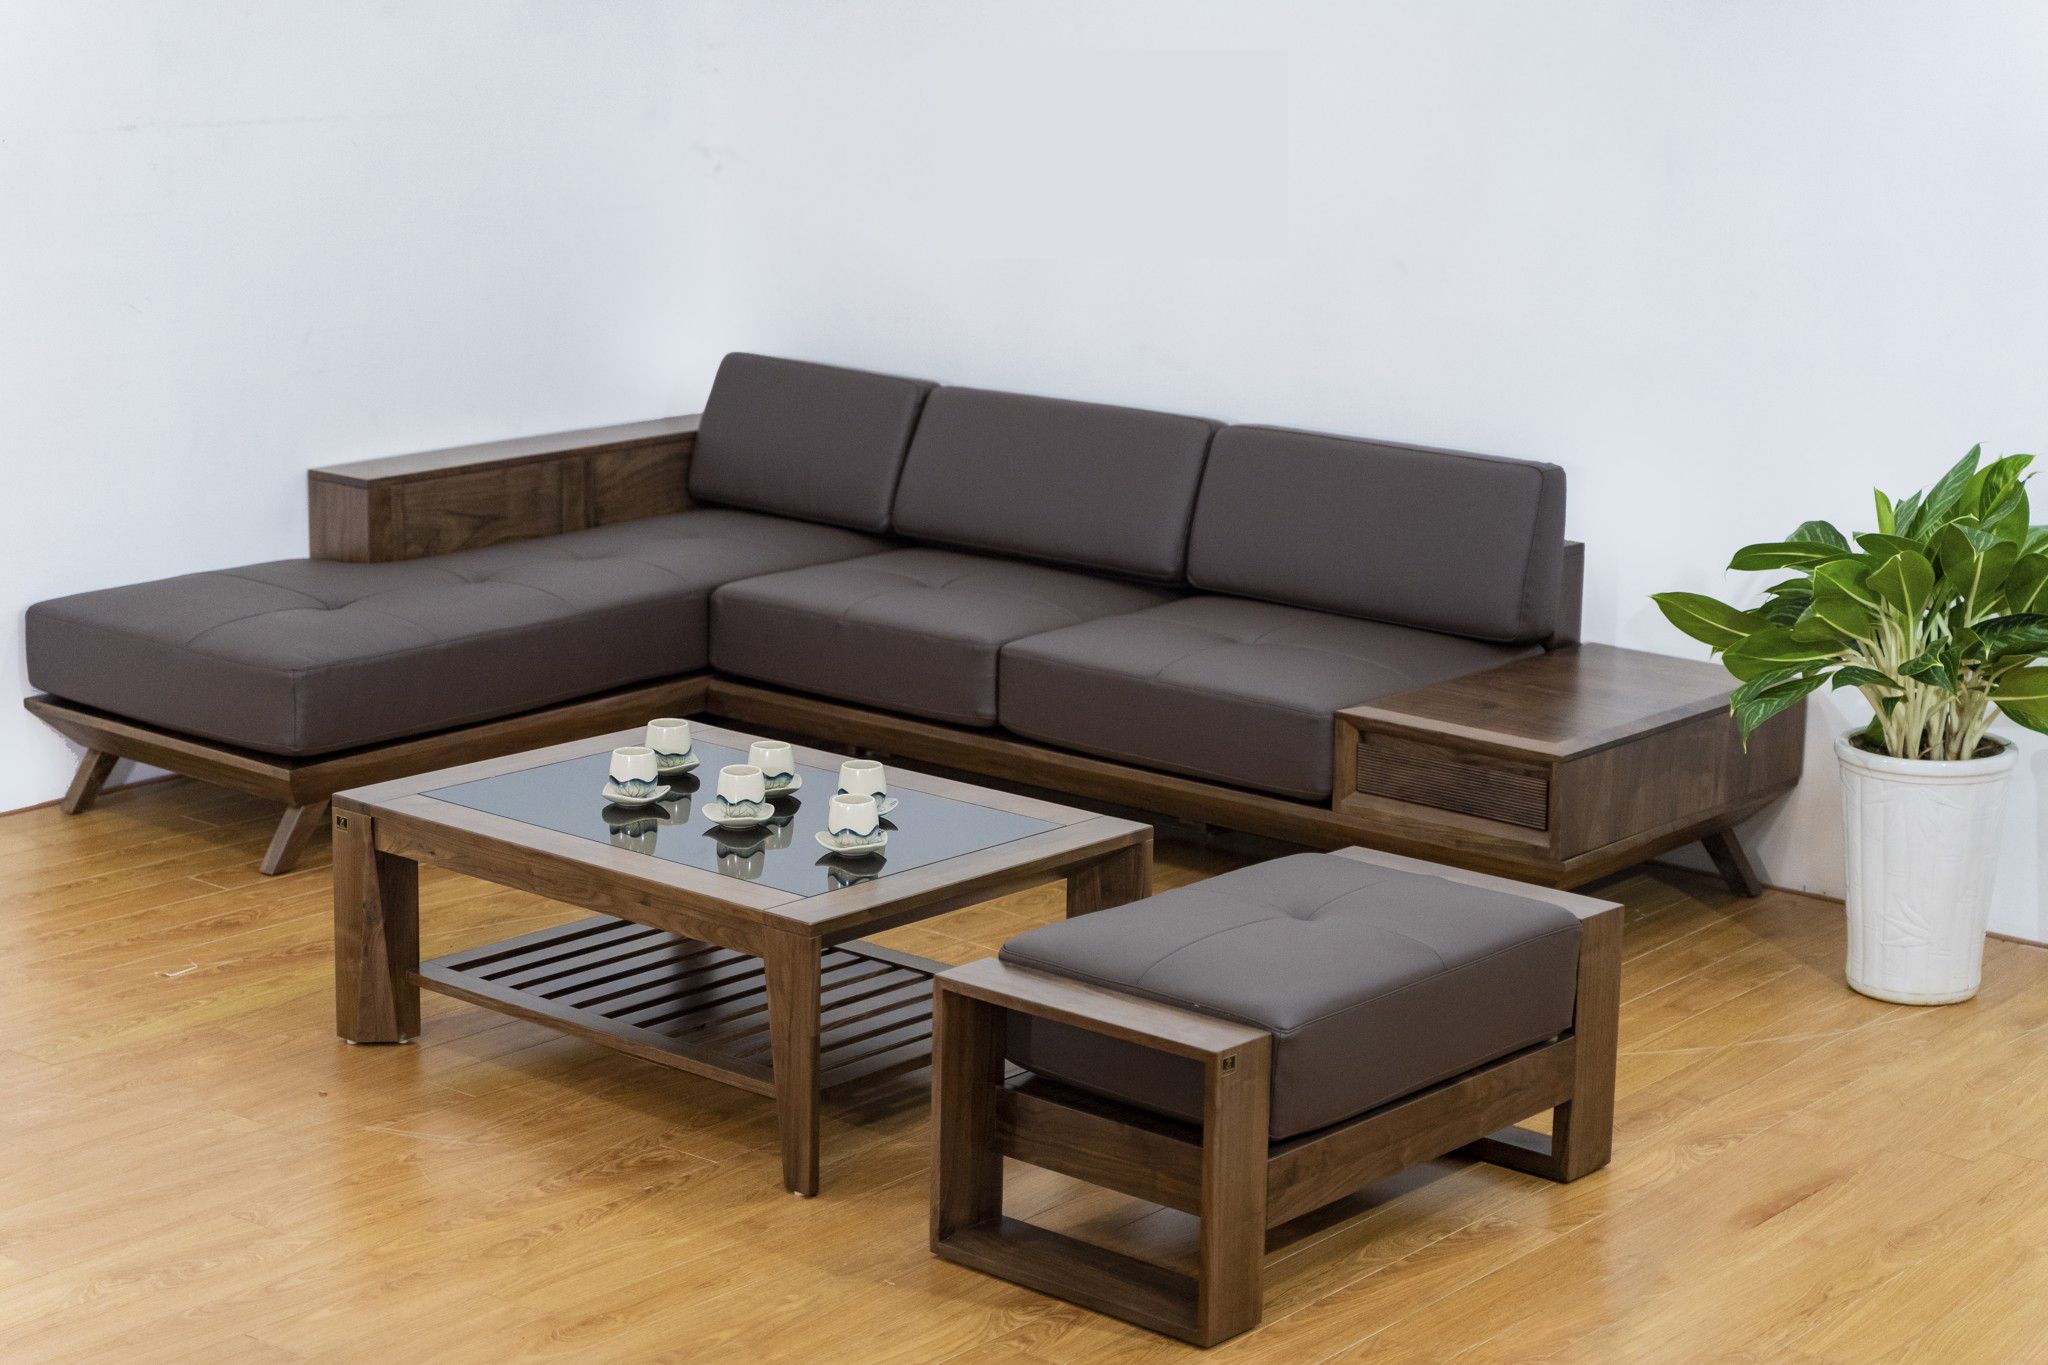 Những mẫu ghế sofa gỗ hiện đại đang được ưa chuông hiện nay 4